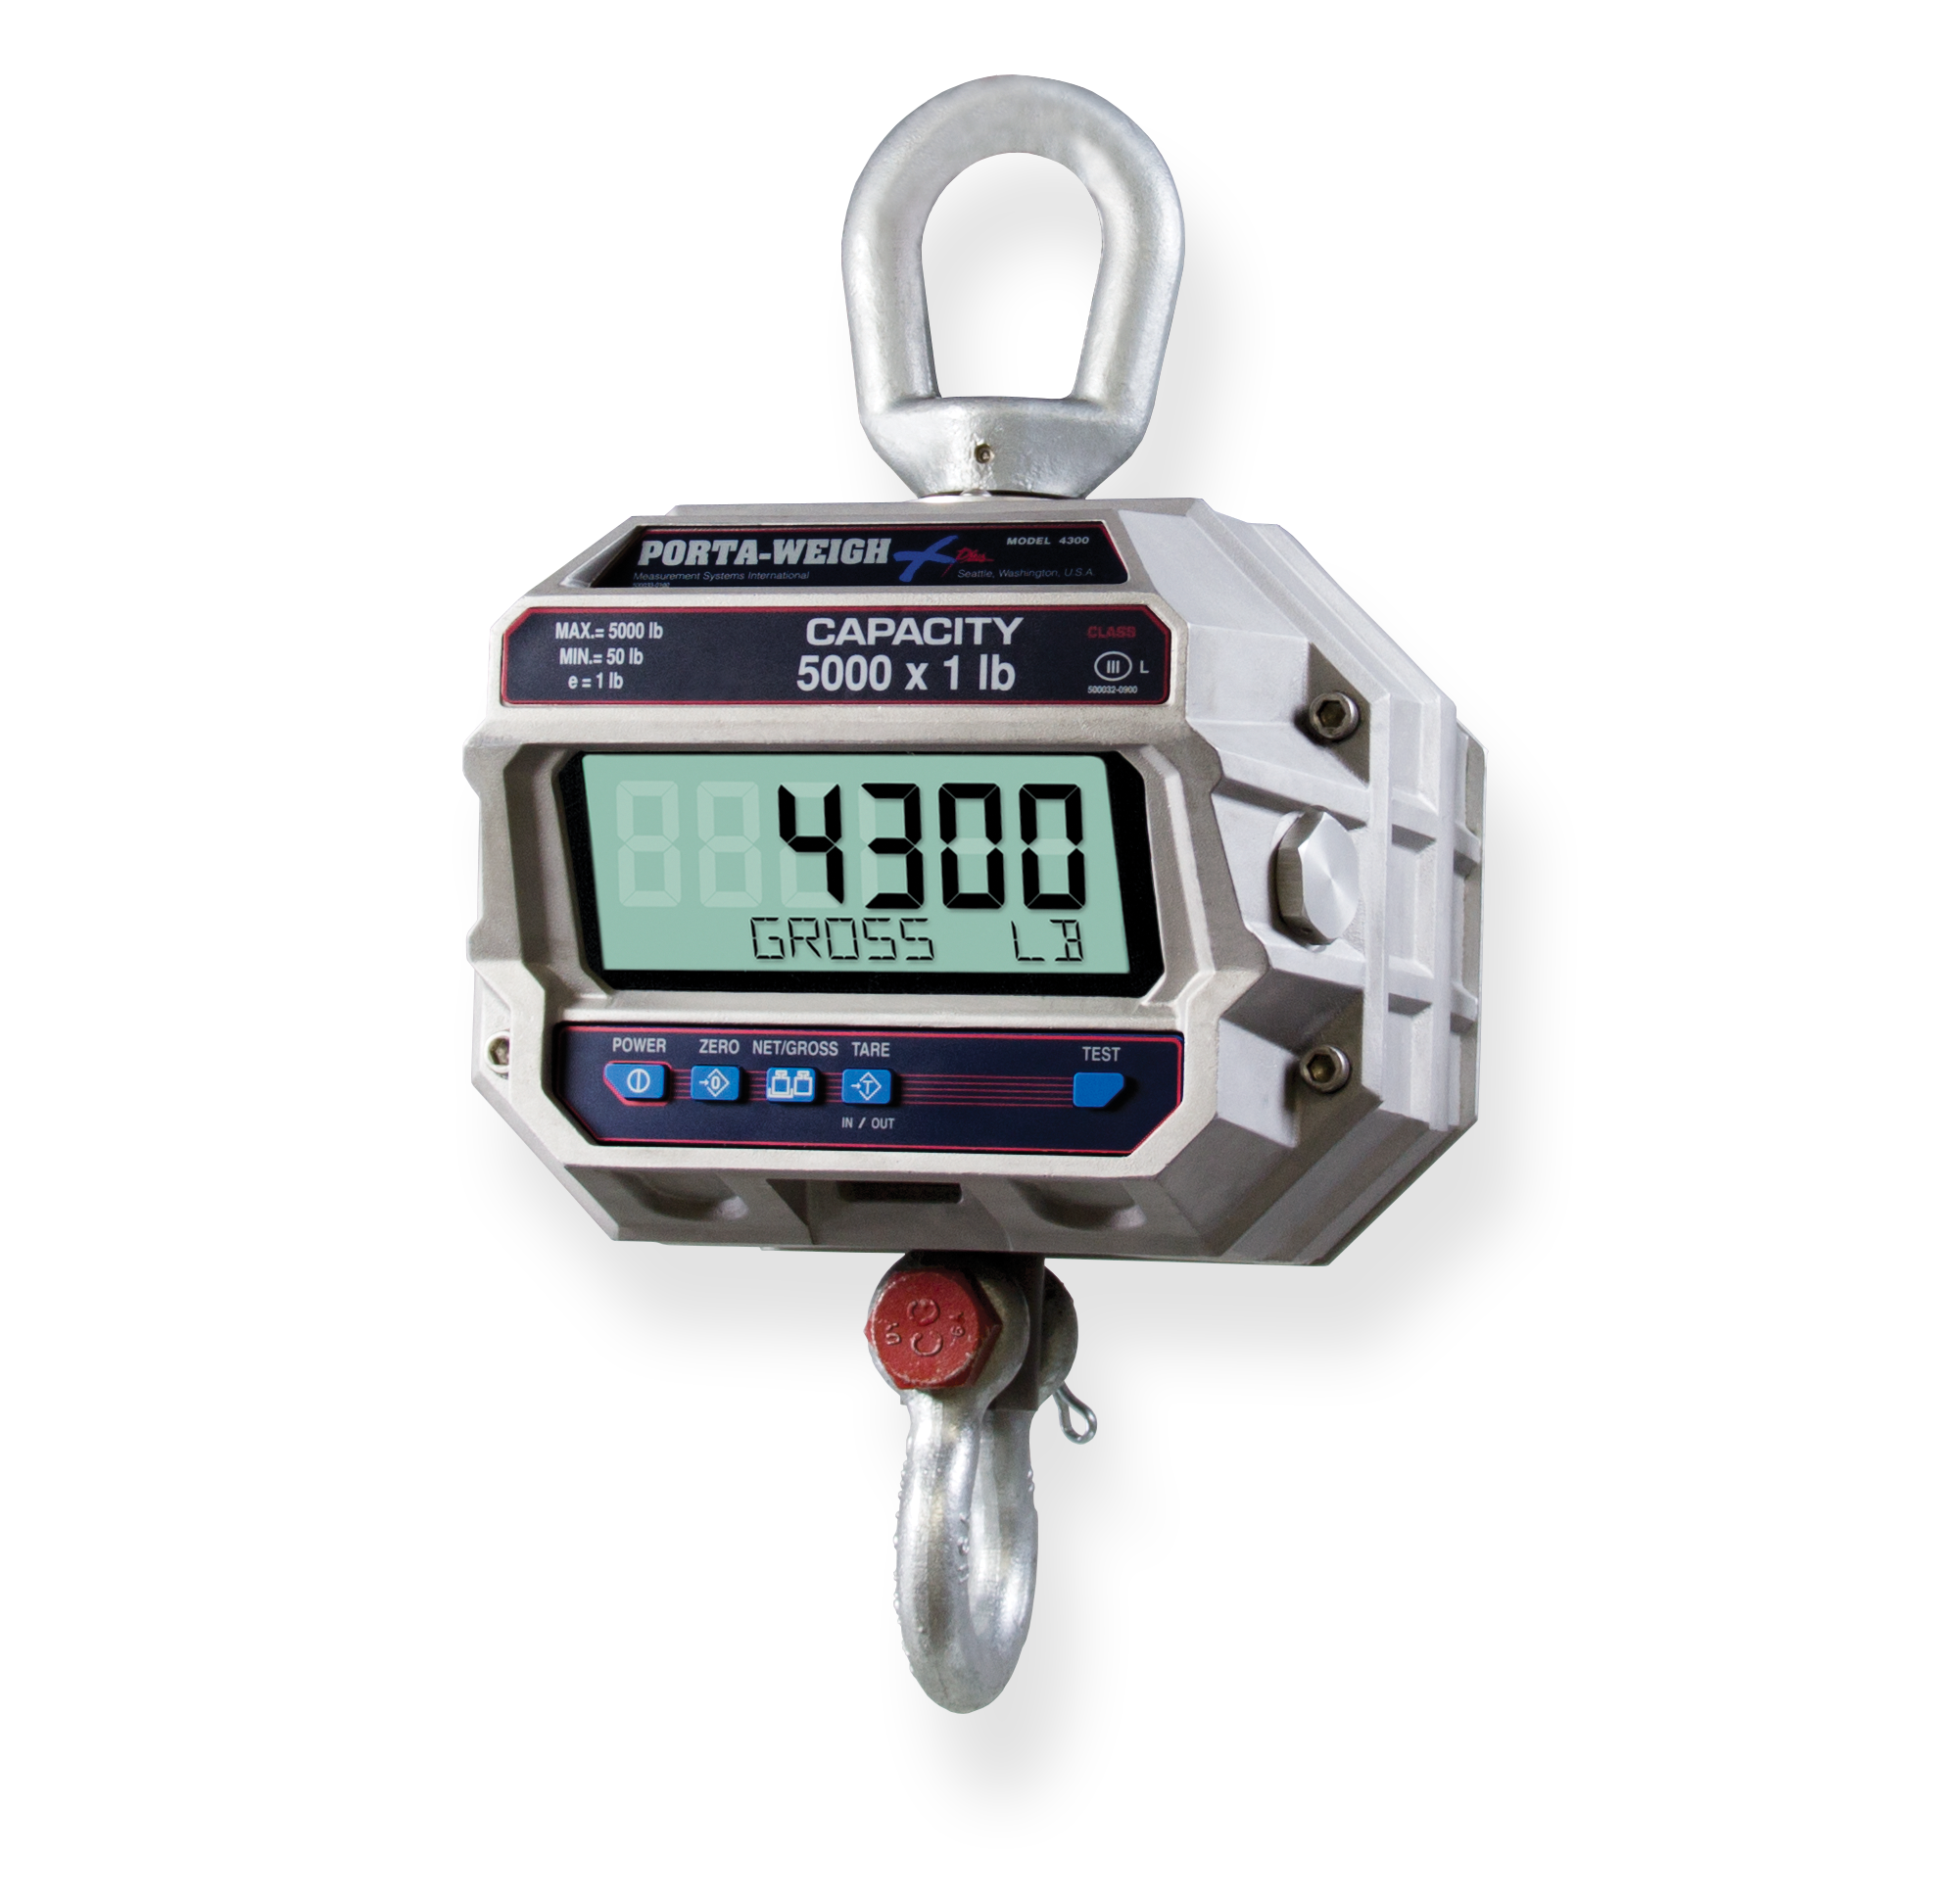 MSI-4300 Port-A-Weigh Plus Crane Scale